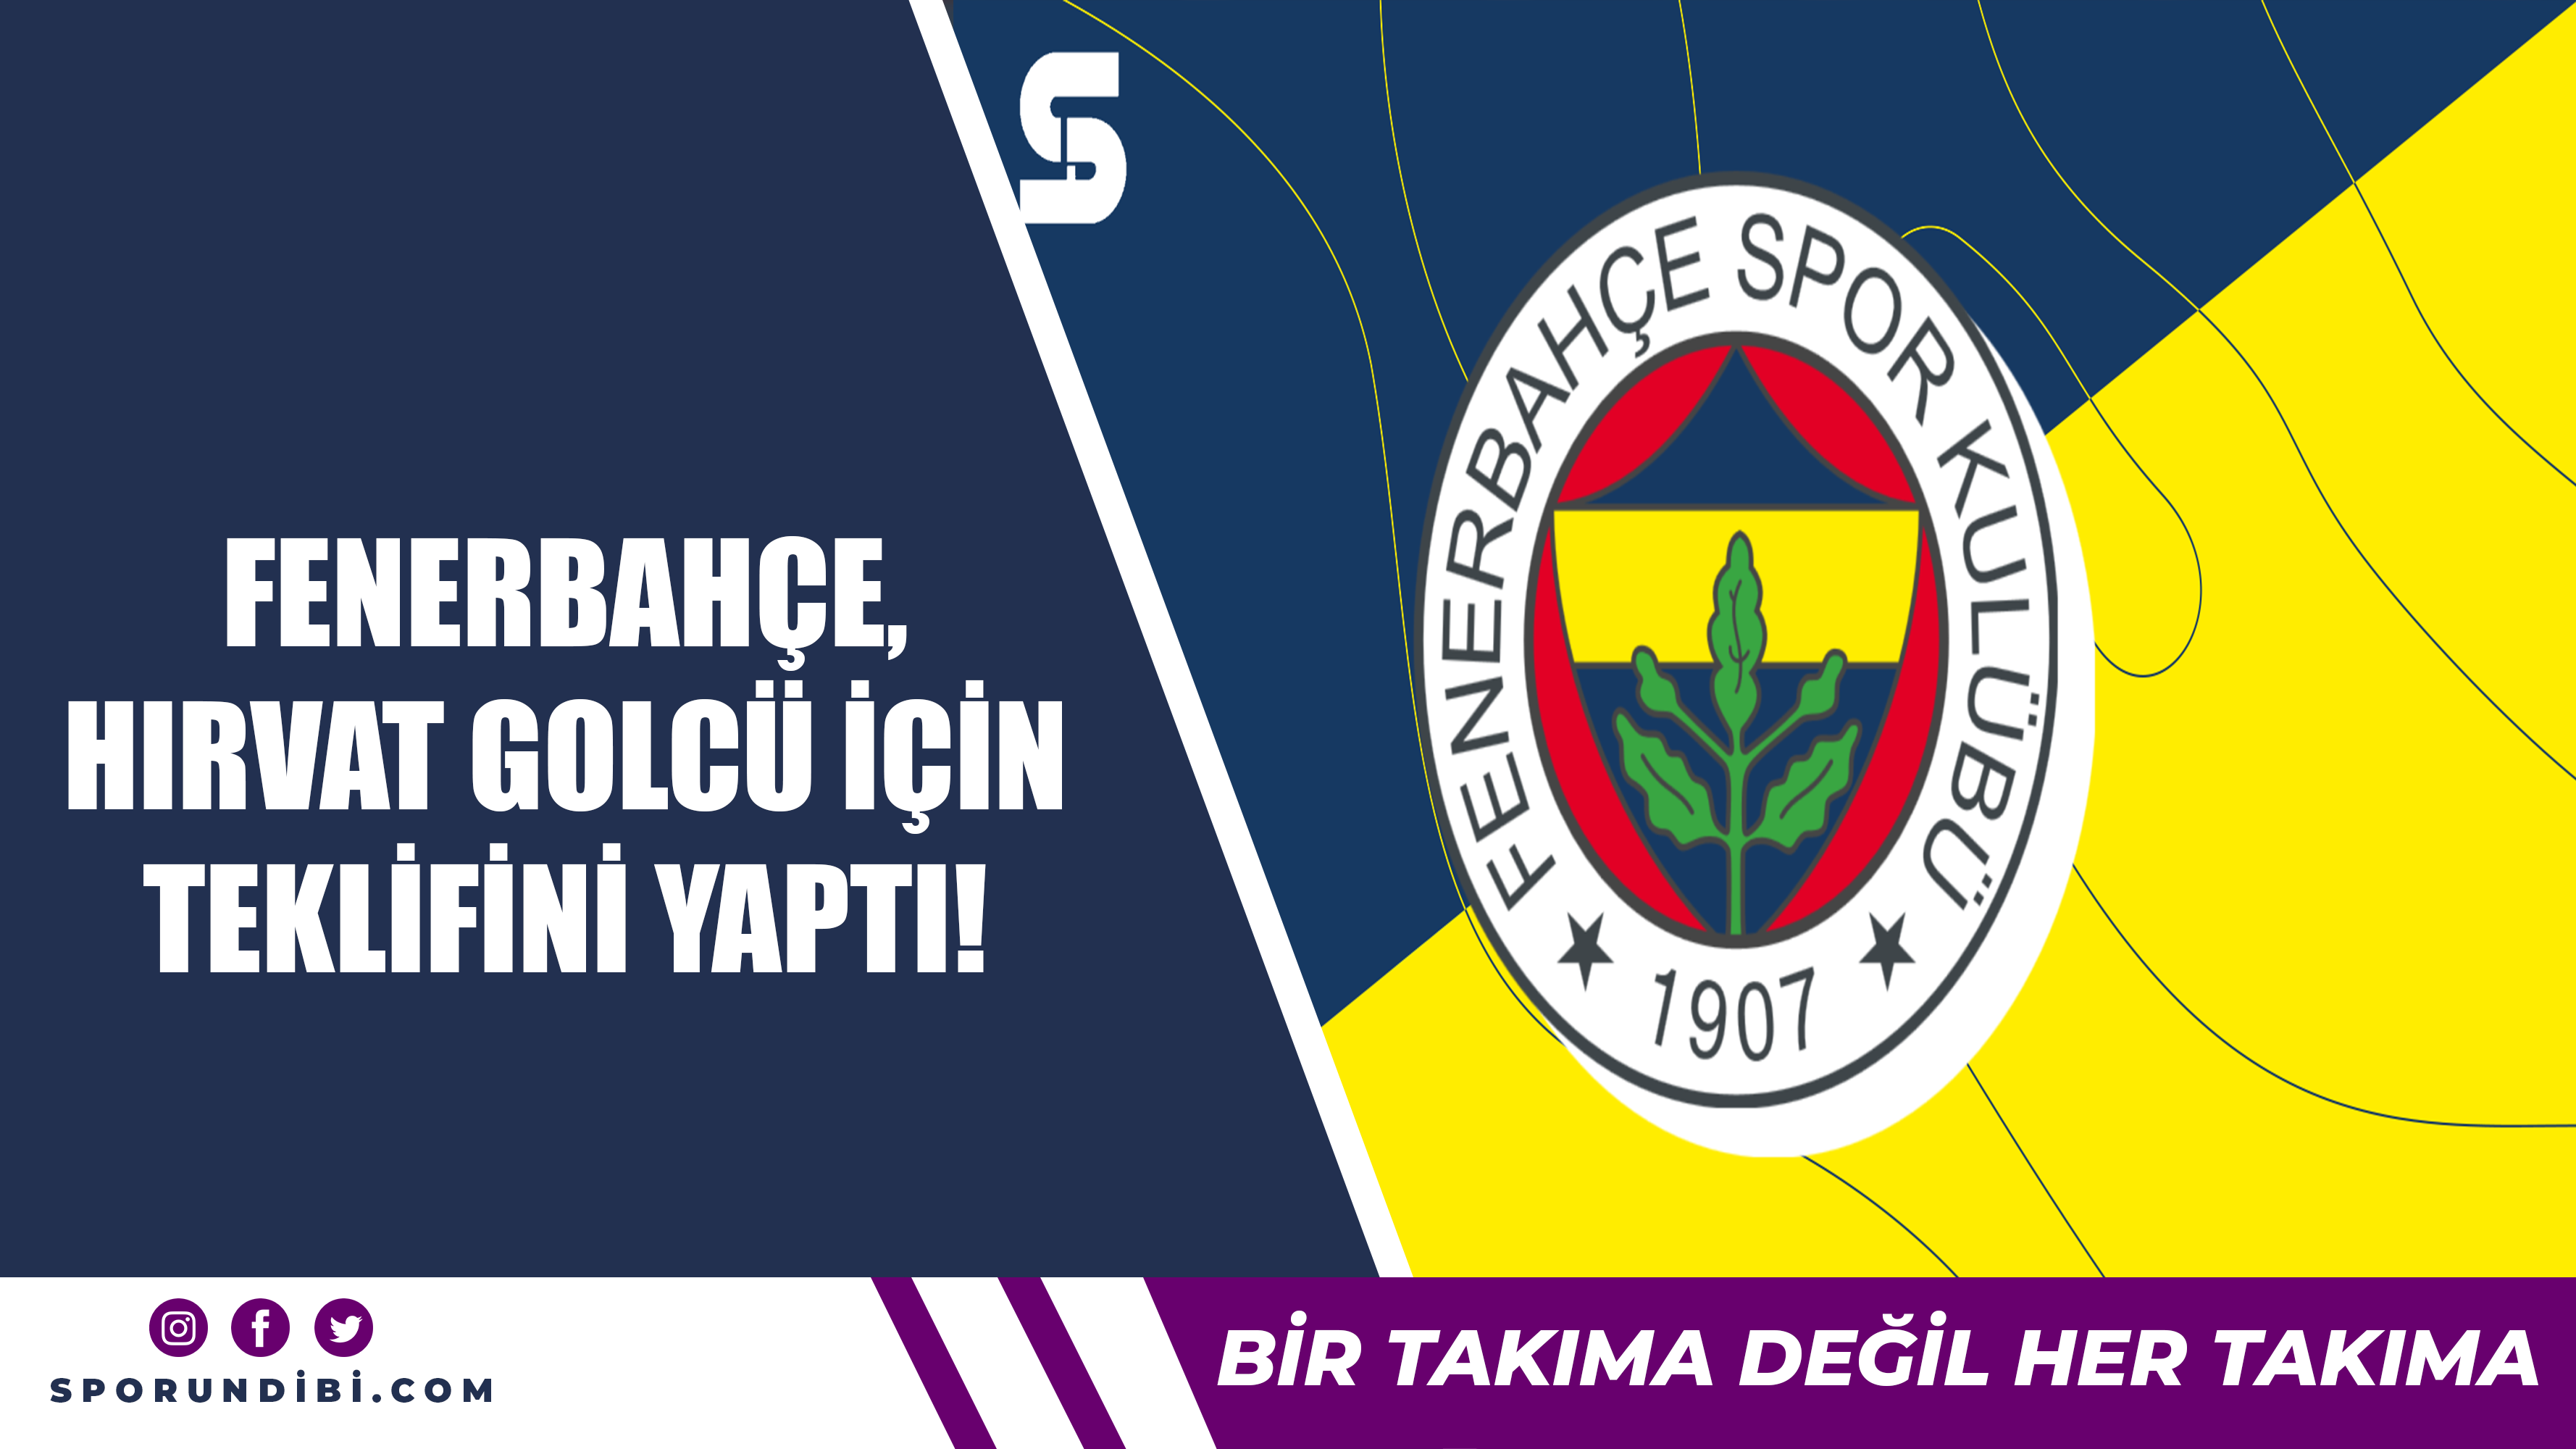 Fenerbahçe, Hırvat golcü için teklifini yaptı!